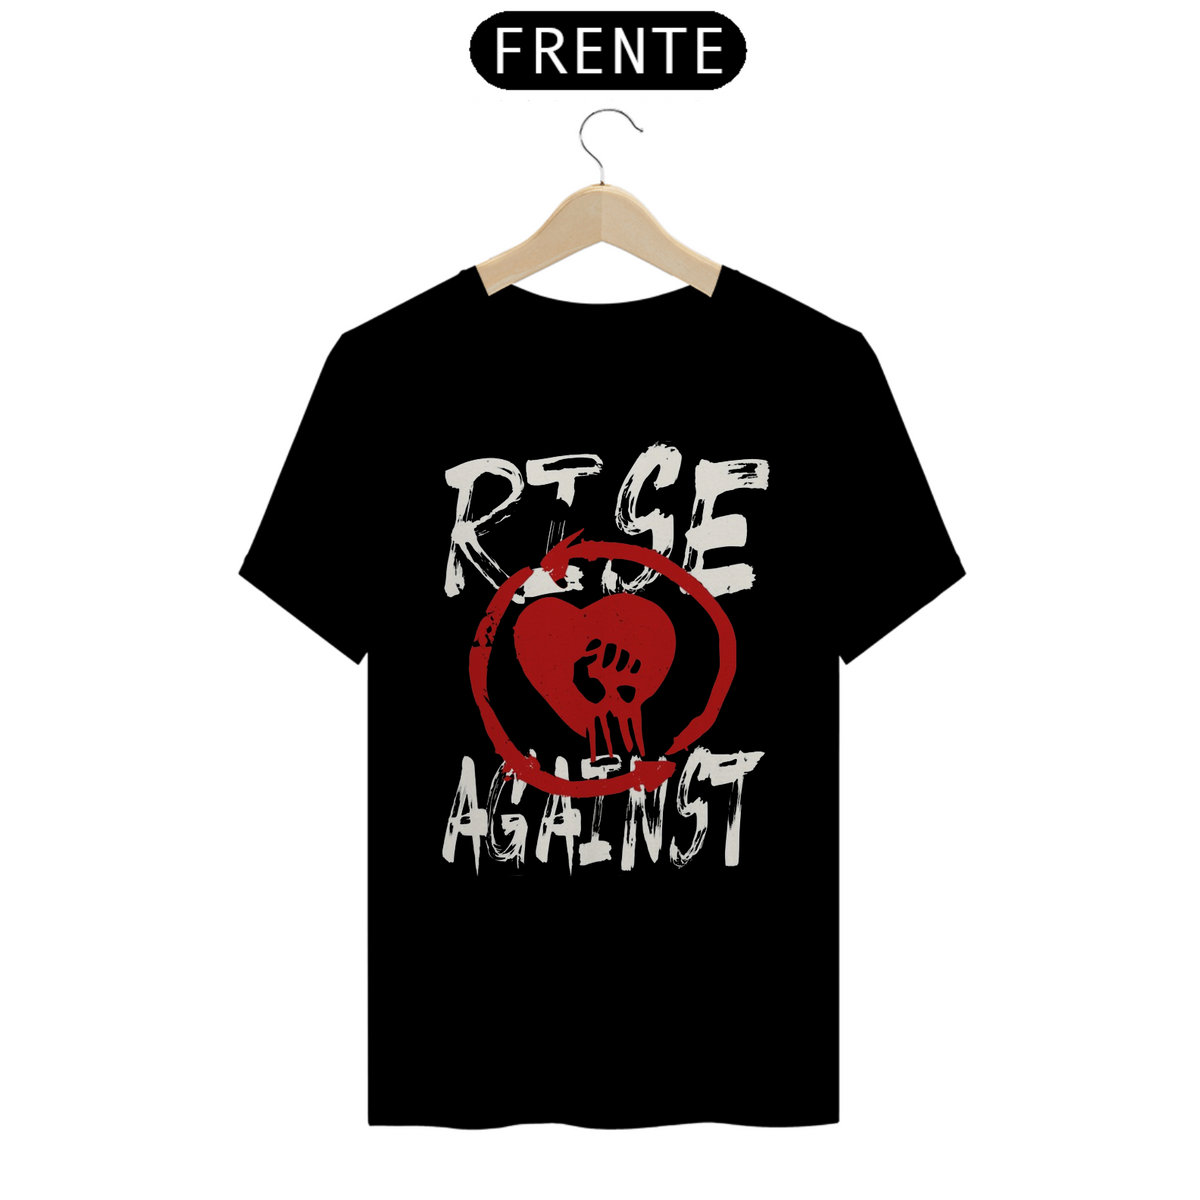 Nome do produto: Rise Against